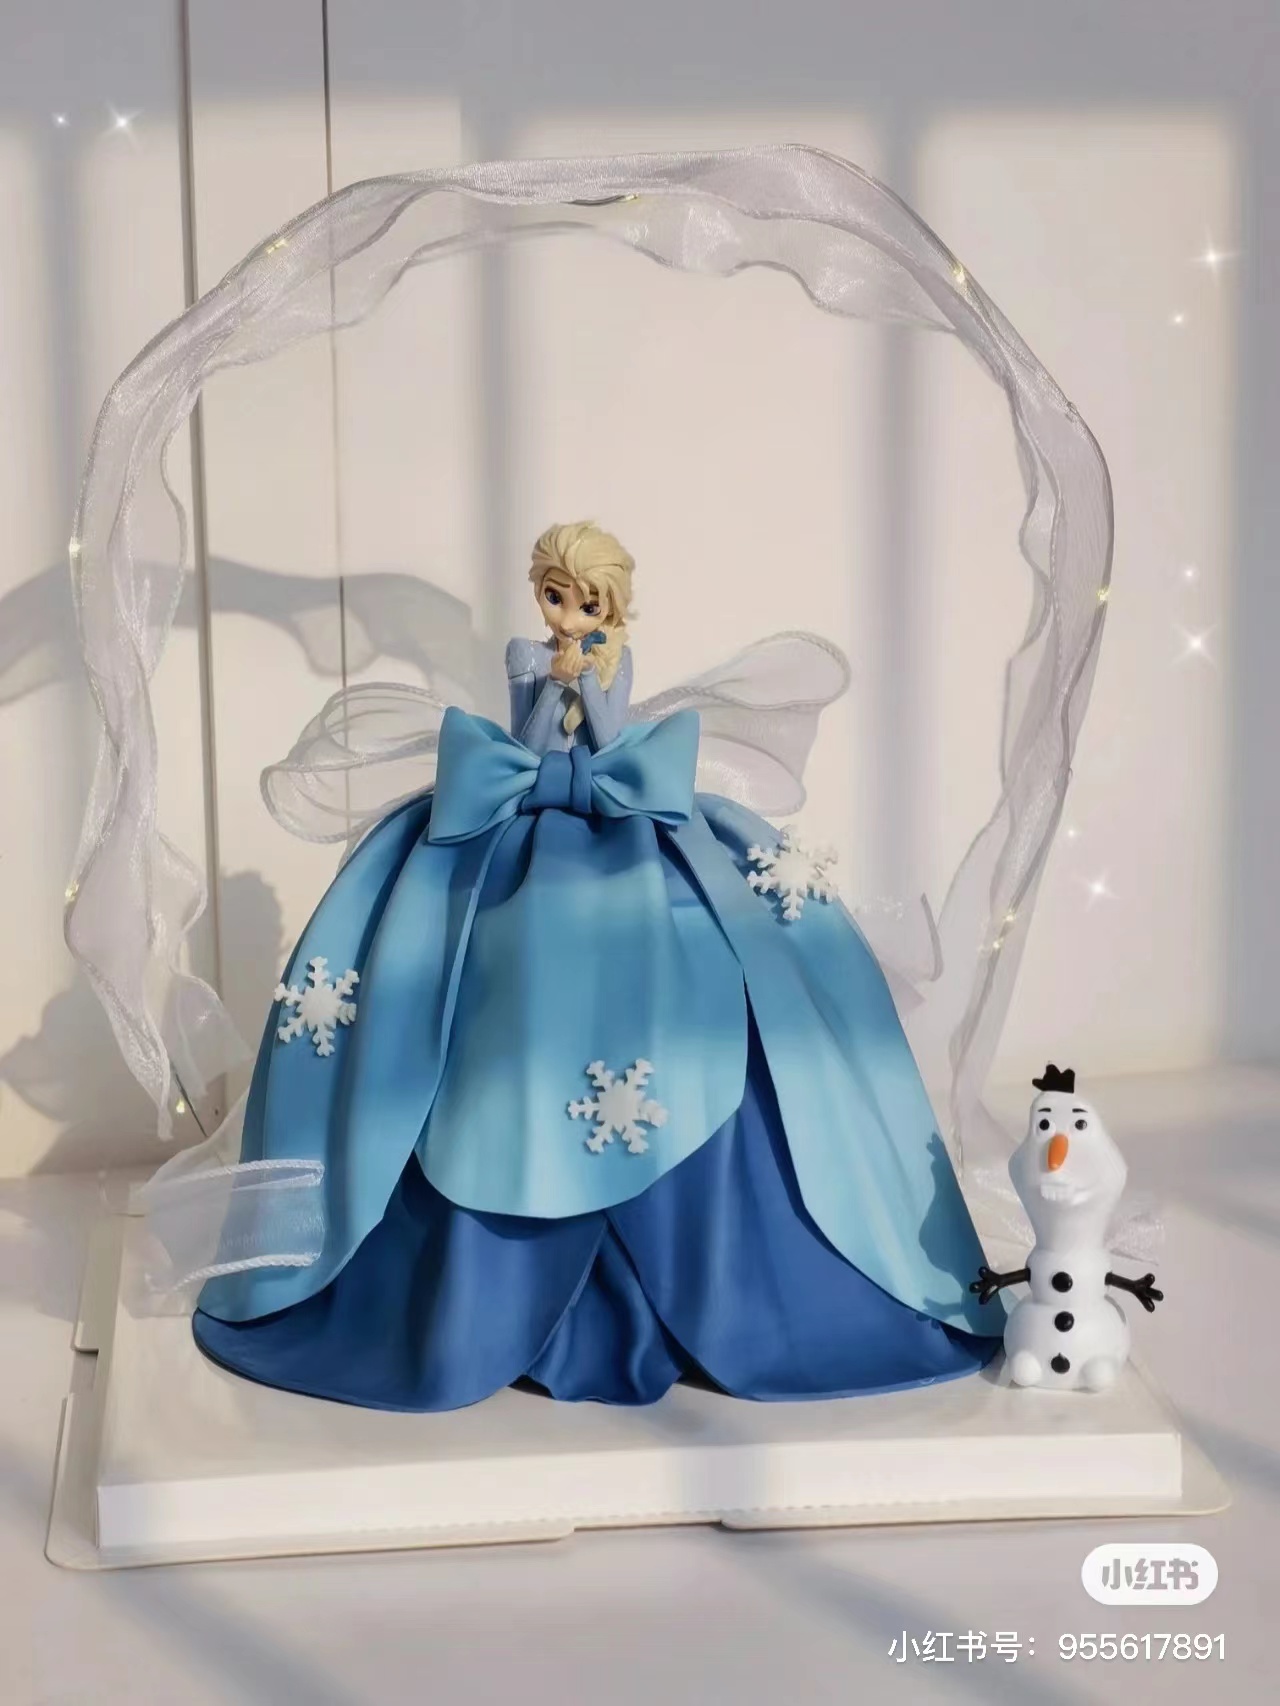 艾莎爱莎公主裙翻糖蛋糕装饰冰雪奇缘公主雪宝女神生日派对装扮